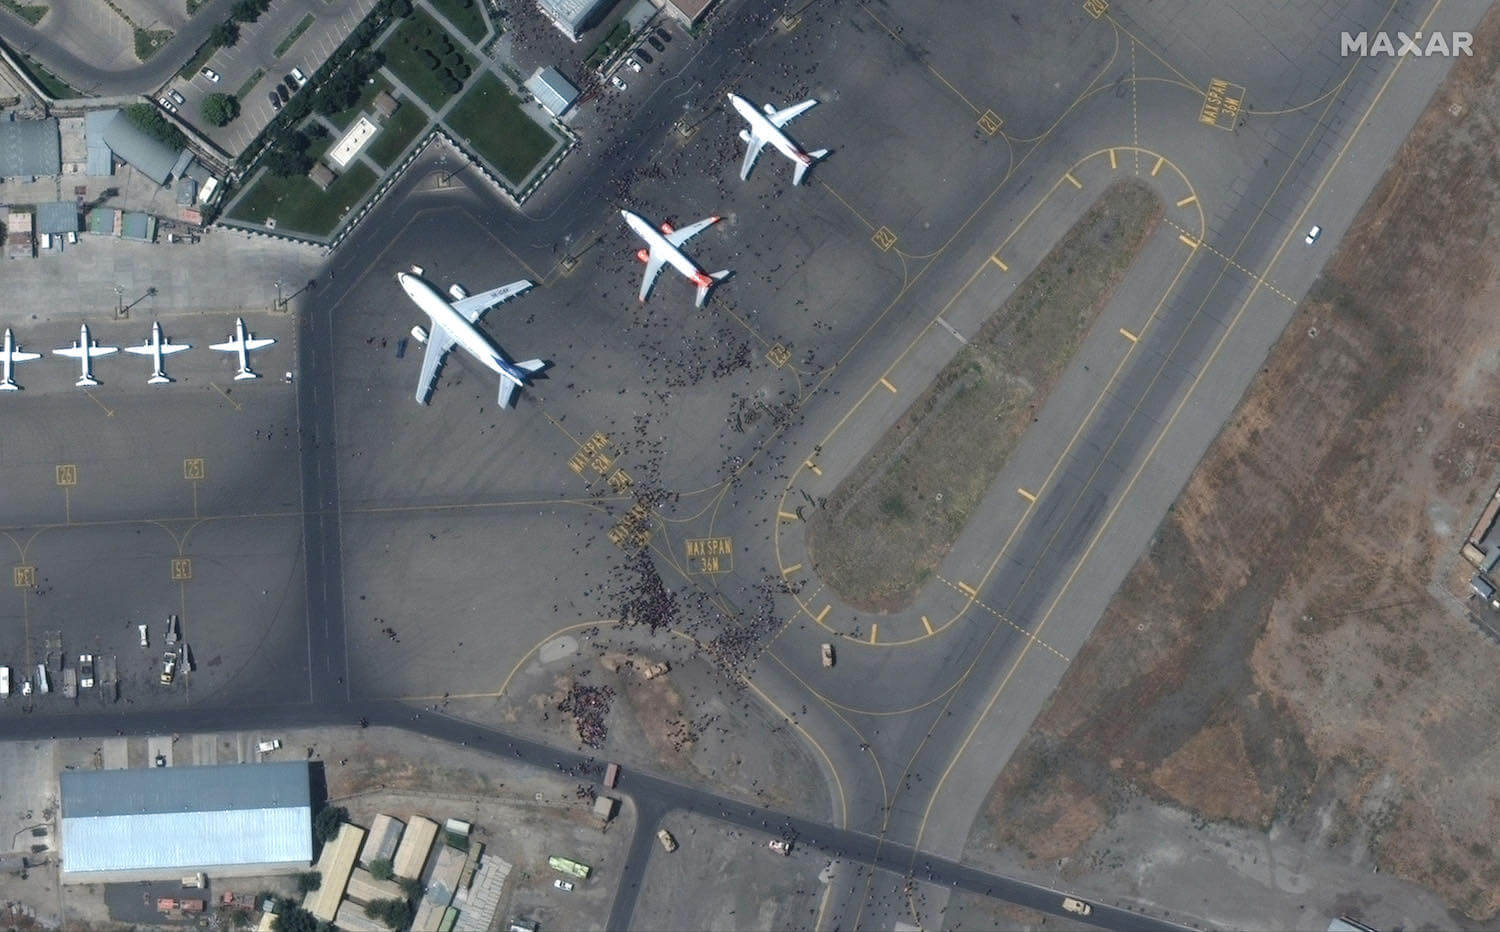 Aufnahme des Kabuler Flughafens nach der Machtübernahme der Taliban mit tausenden flüchtenden Menschen Sommer 2021, aufgenommen von einem Maxar Satelliten (Quelle: Maxar).